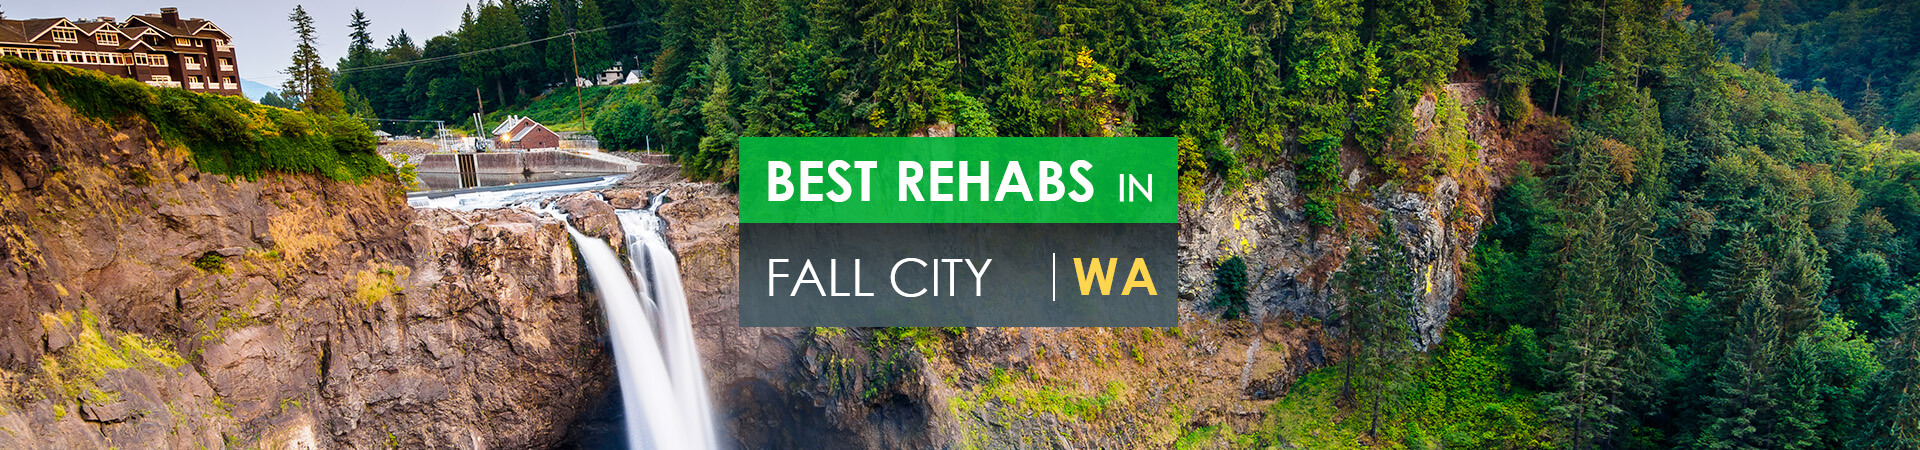 Best rehabs in Fall City, WA